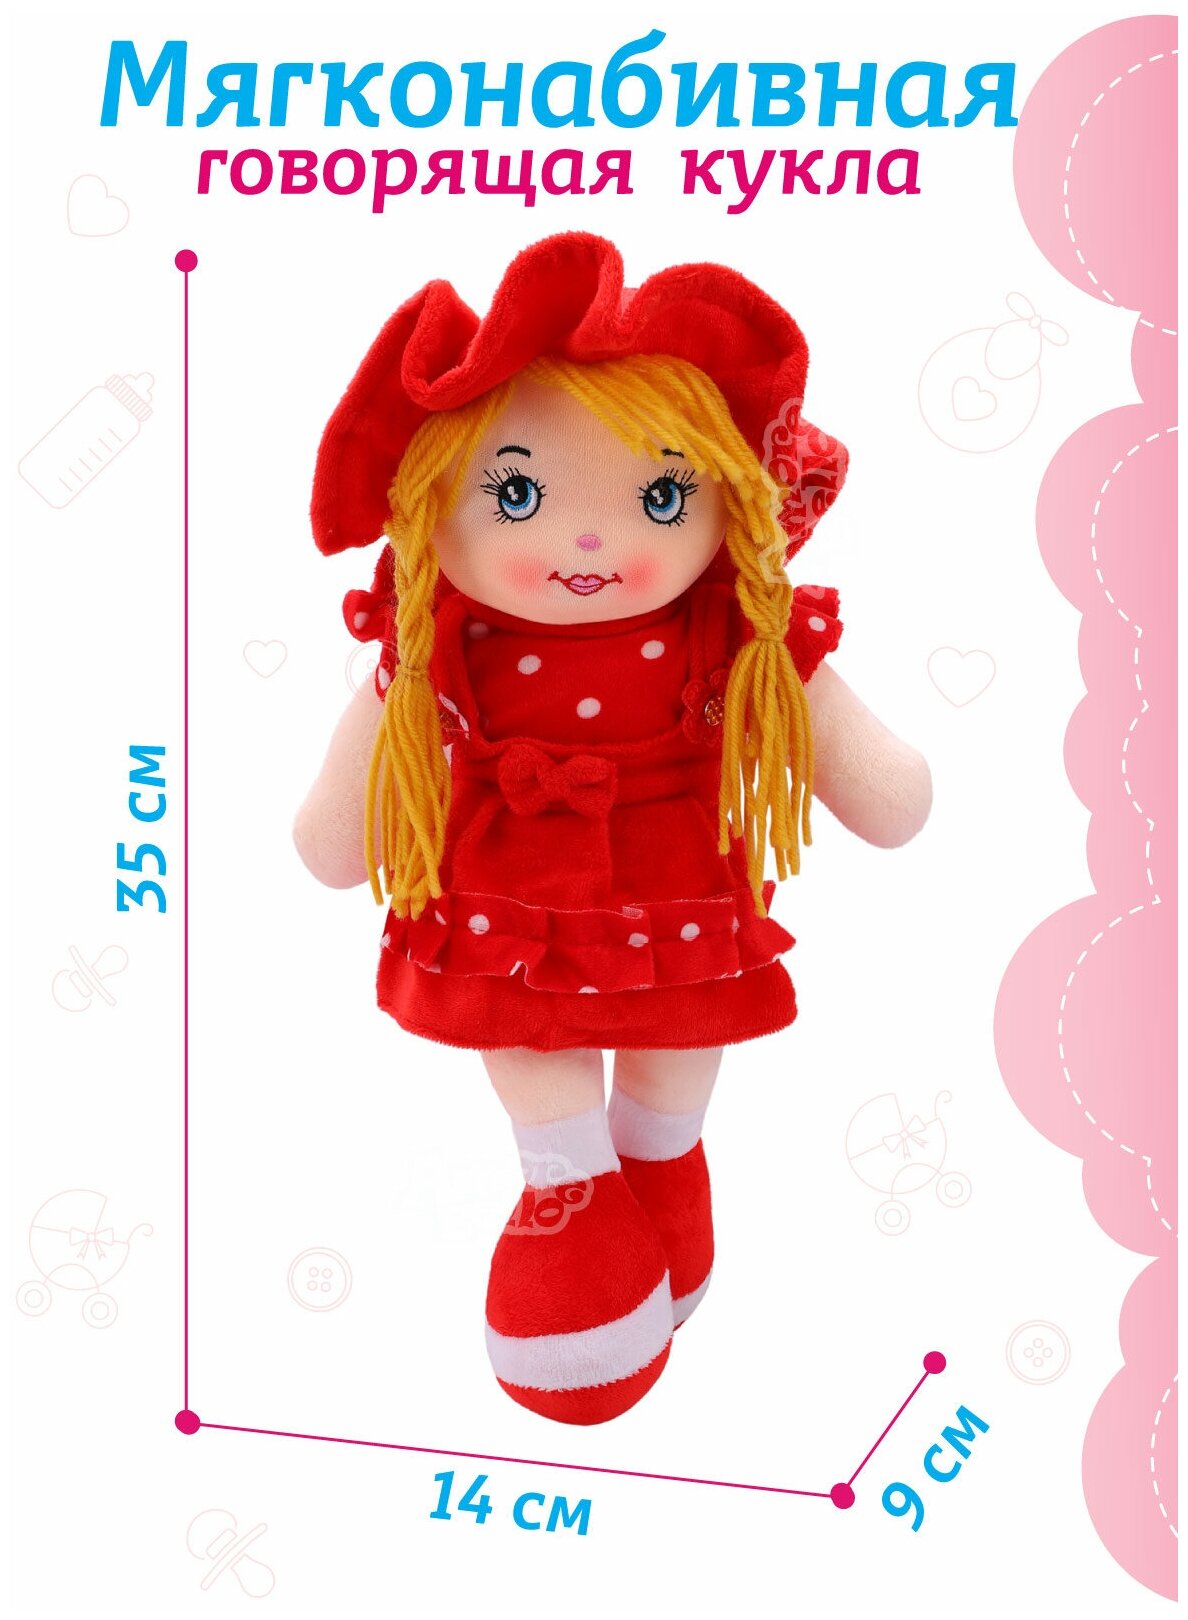 Кукла детская мягконабивная говорящая ТМ Amore Bello, 35 см, на батарейках, фразы на русском языке/стихотворение/песенка, красный, JB0572054